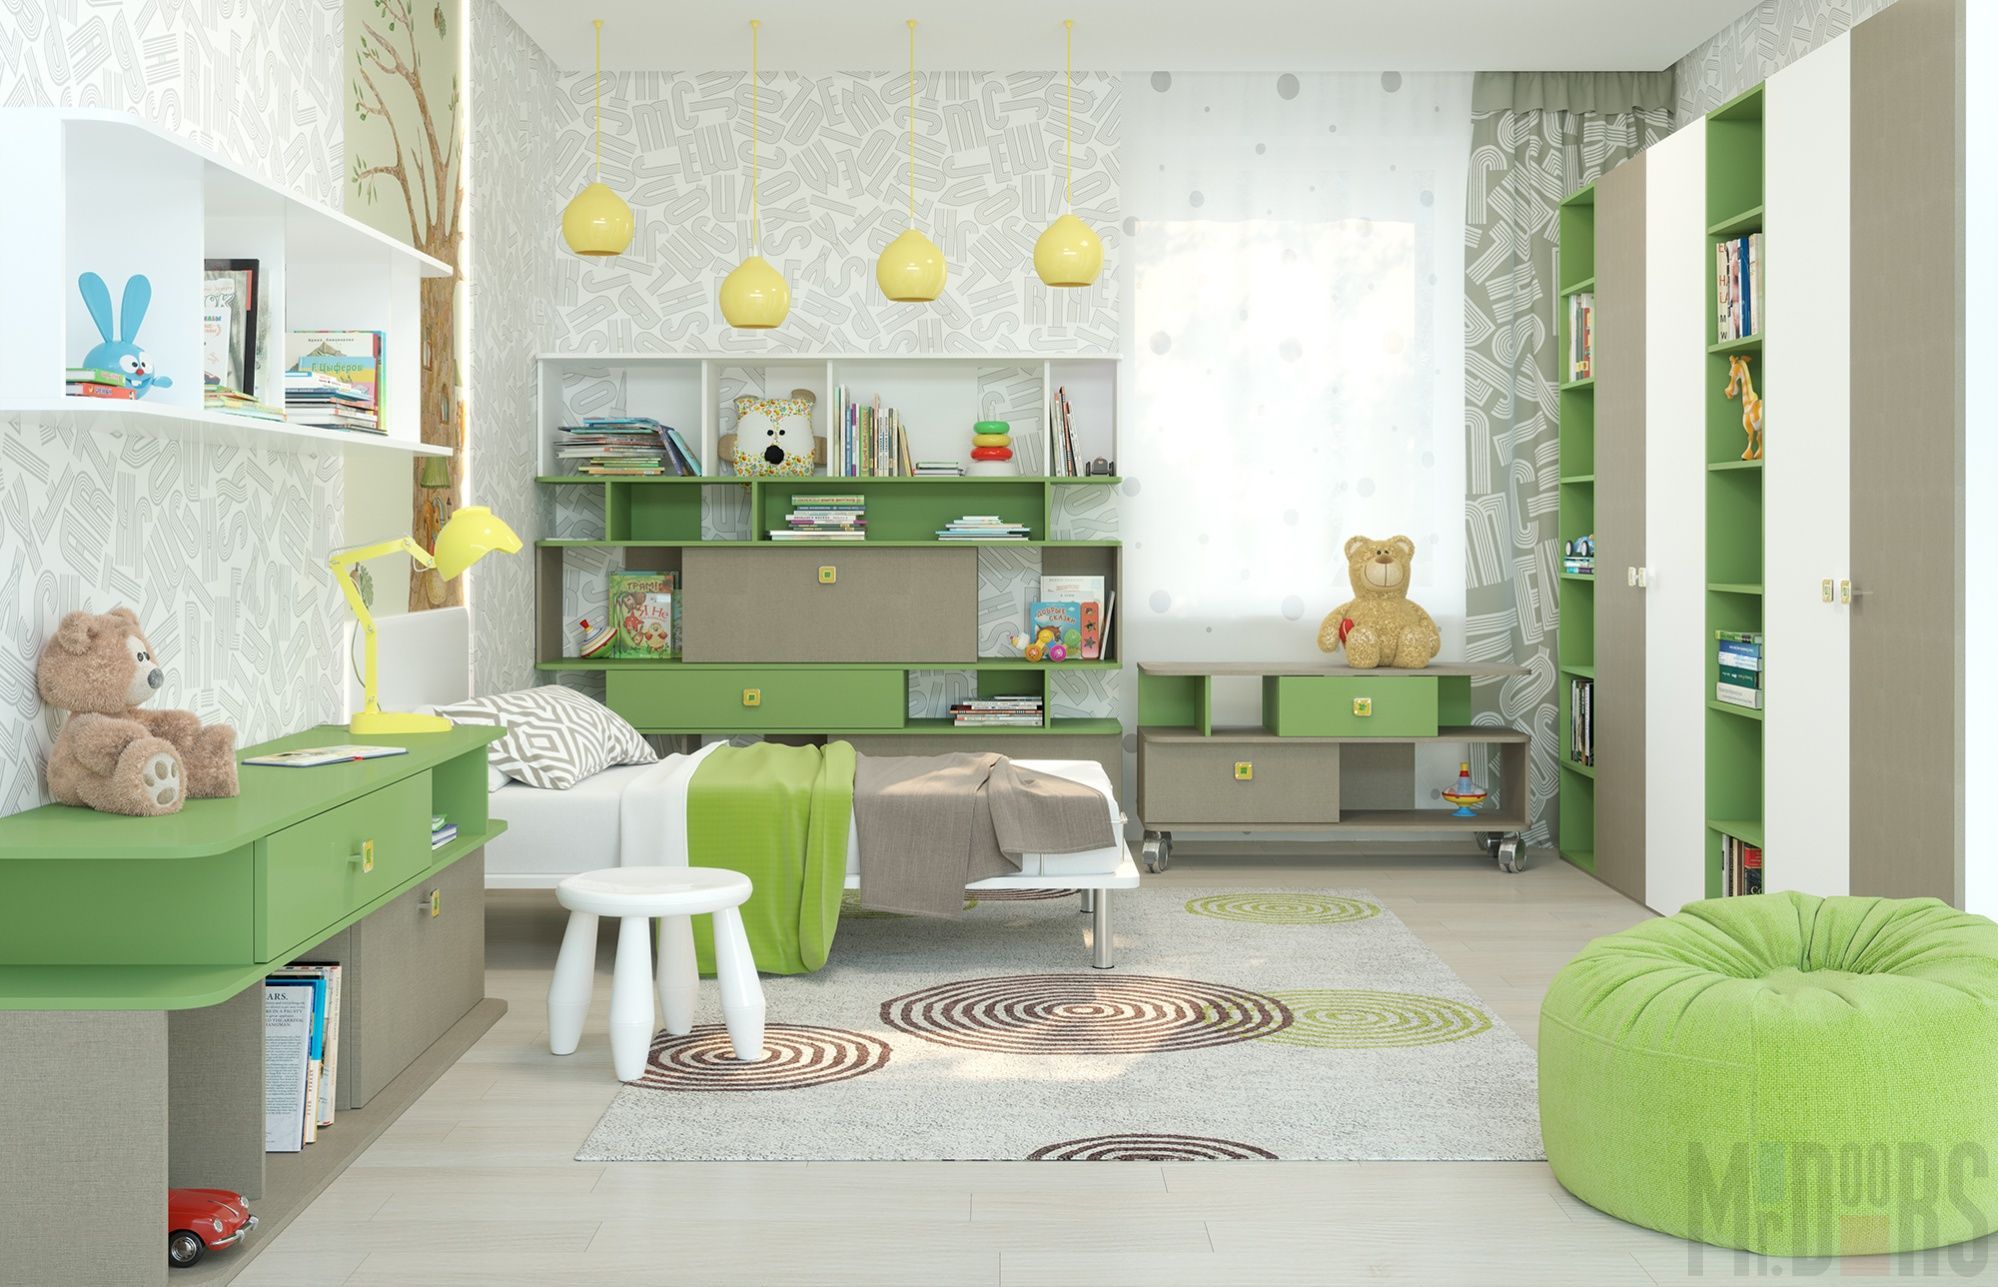  маленькой детской комнаты: интерьер, как расставить мебель - 23 фото